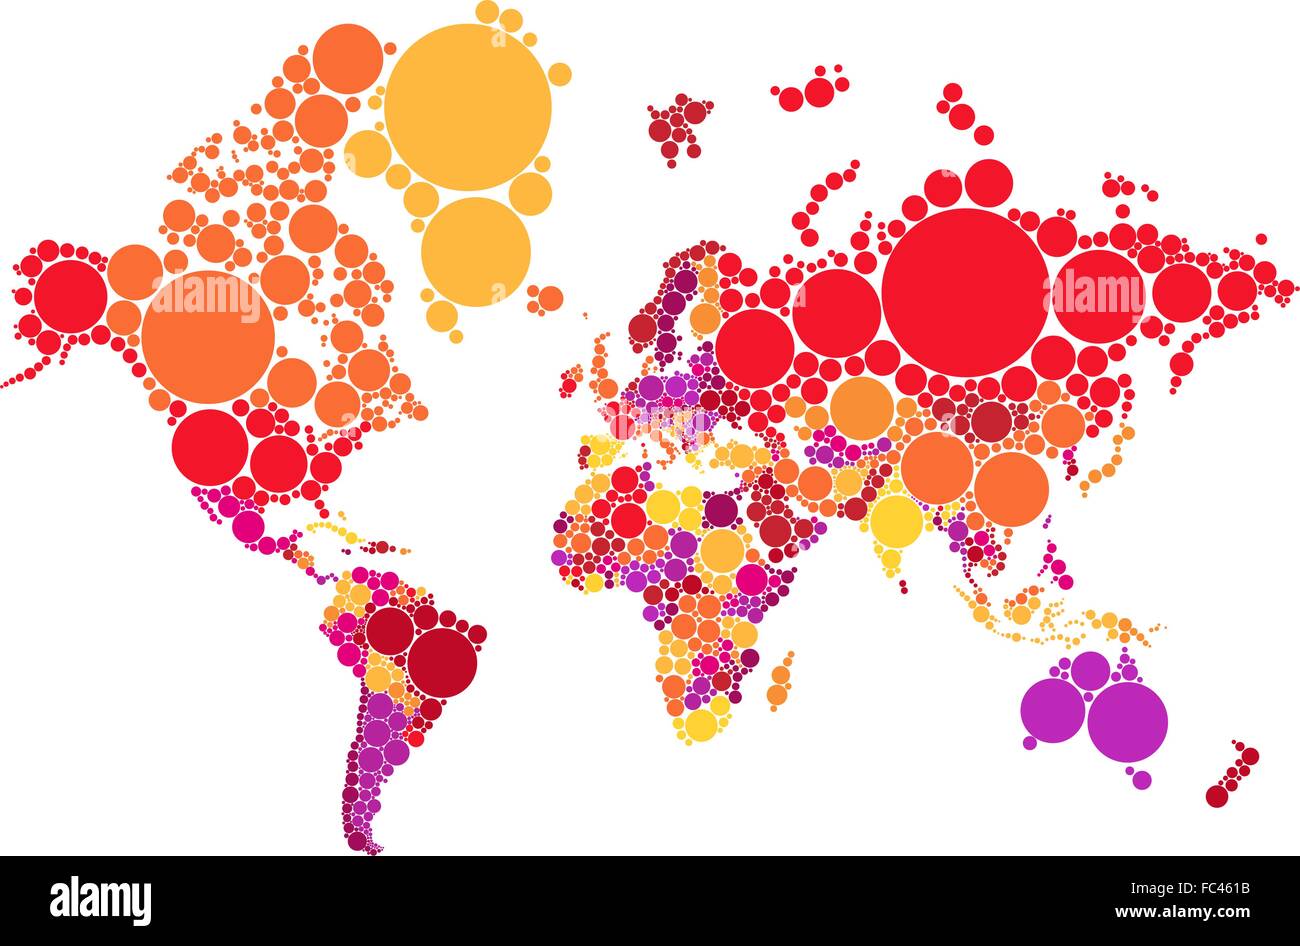 Résumé politique dot carte du monde avec les pays, la carte d'illustration vectorielle, la NASA source Domaine Public Illustration de Vecteur